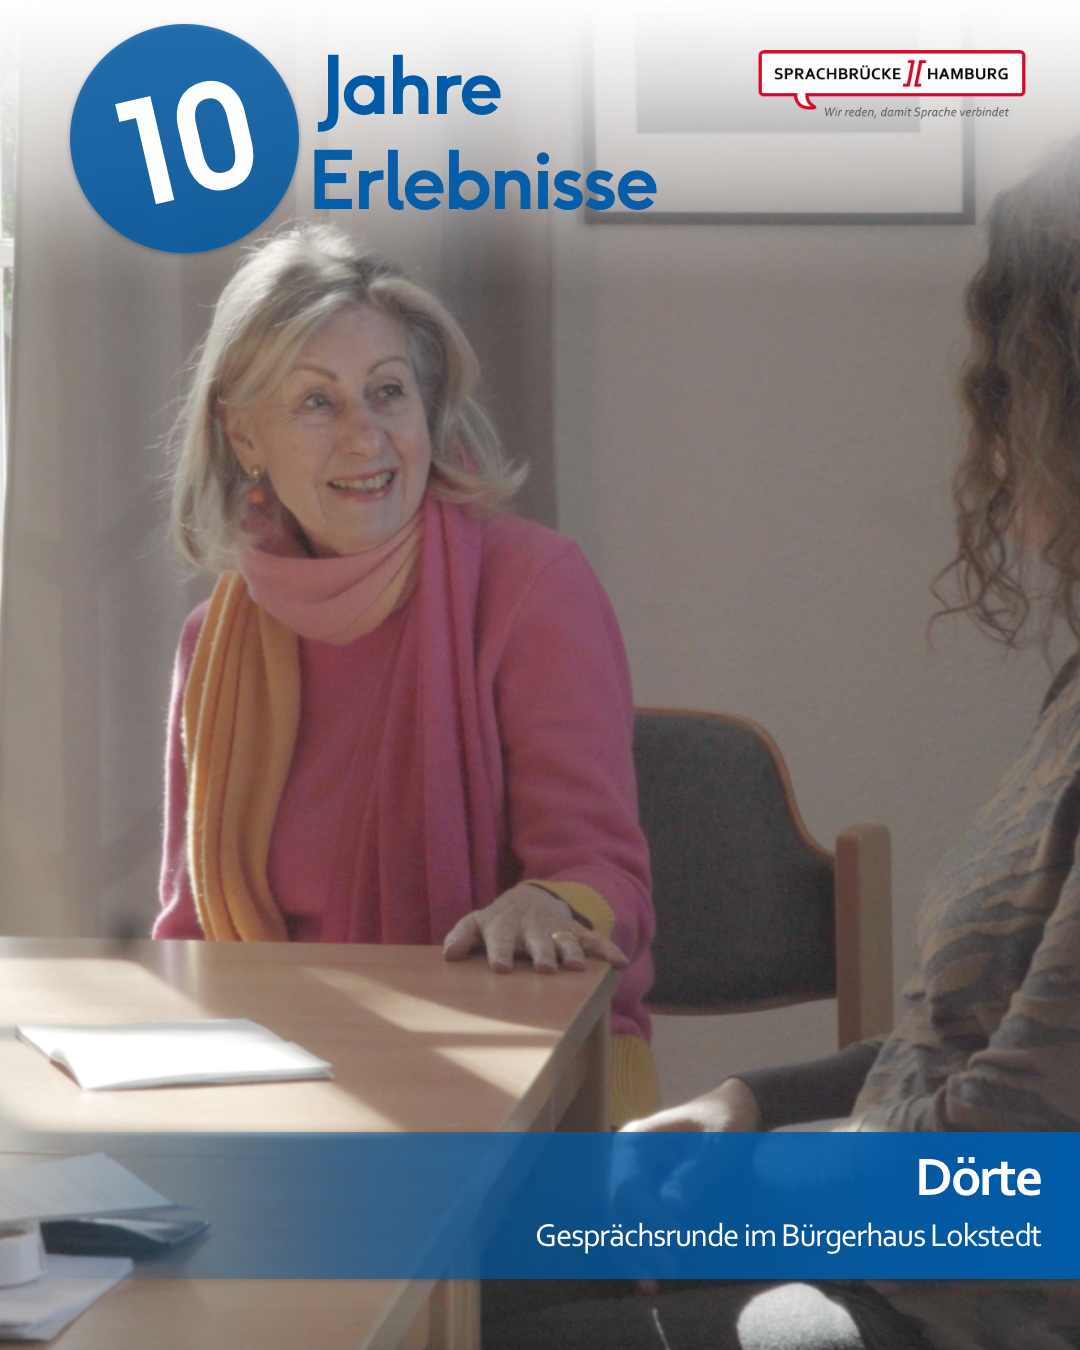 Gesprächsleiterin Dörte sitzt an der Ecke eines Schreibtischs während der Gesprächsrunde am Standort Lokstedt und blickt lächelnd nach rechts. Am rechten Bildrand ist die Silhouette einer anderen Frau zu erkennen.